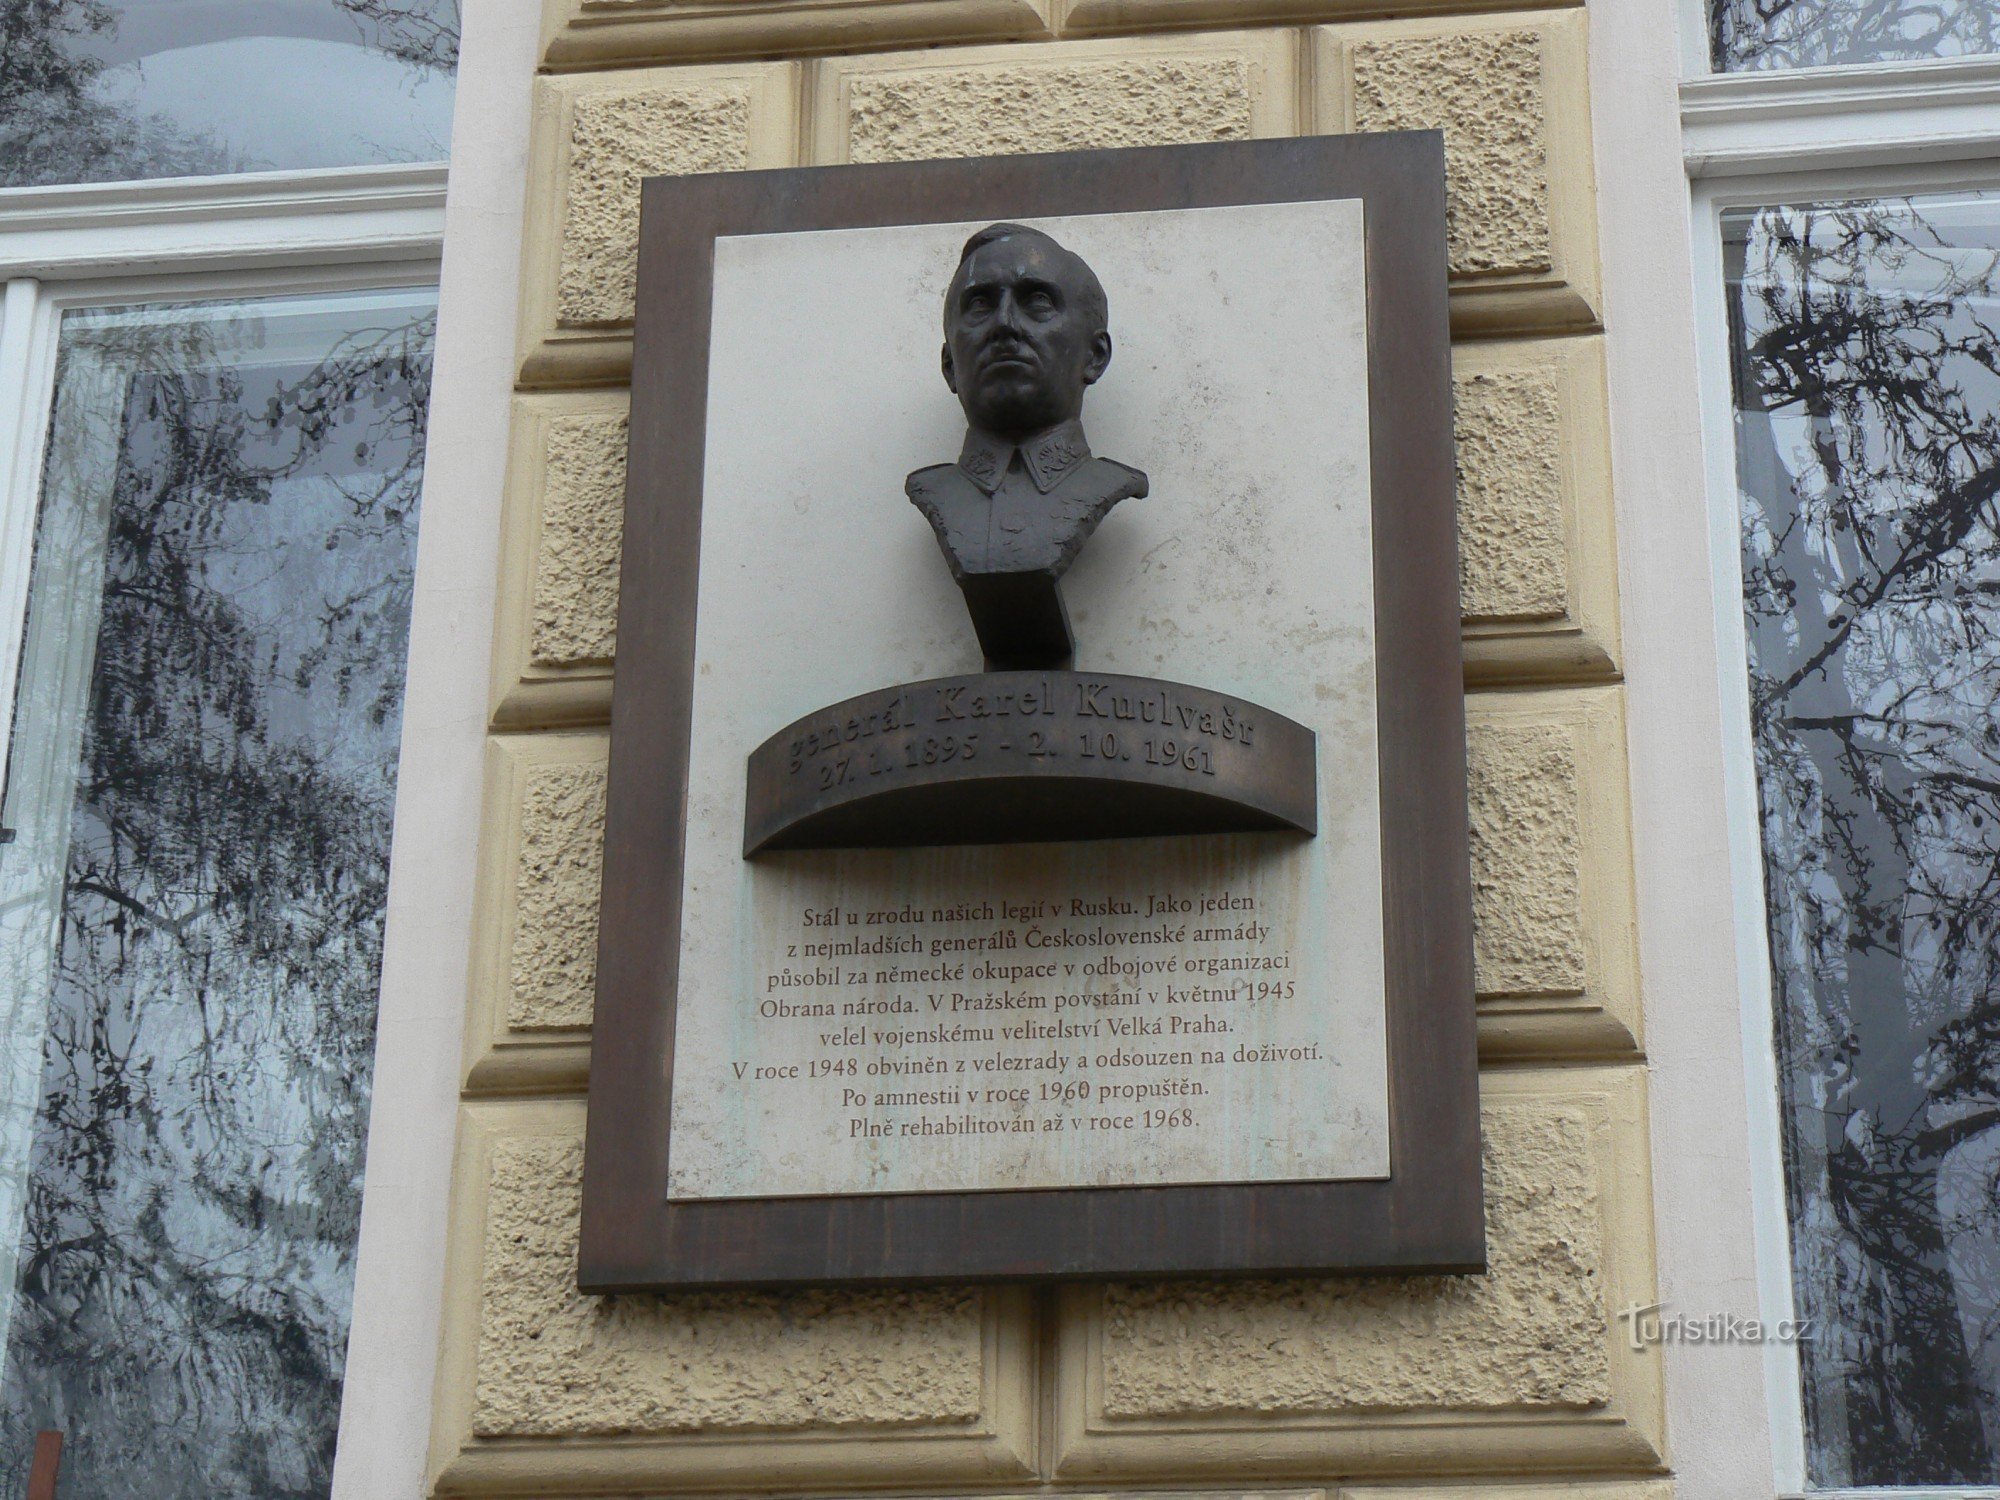 クトルヴァシュル将軍の記念碑